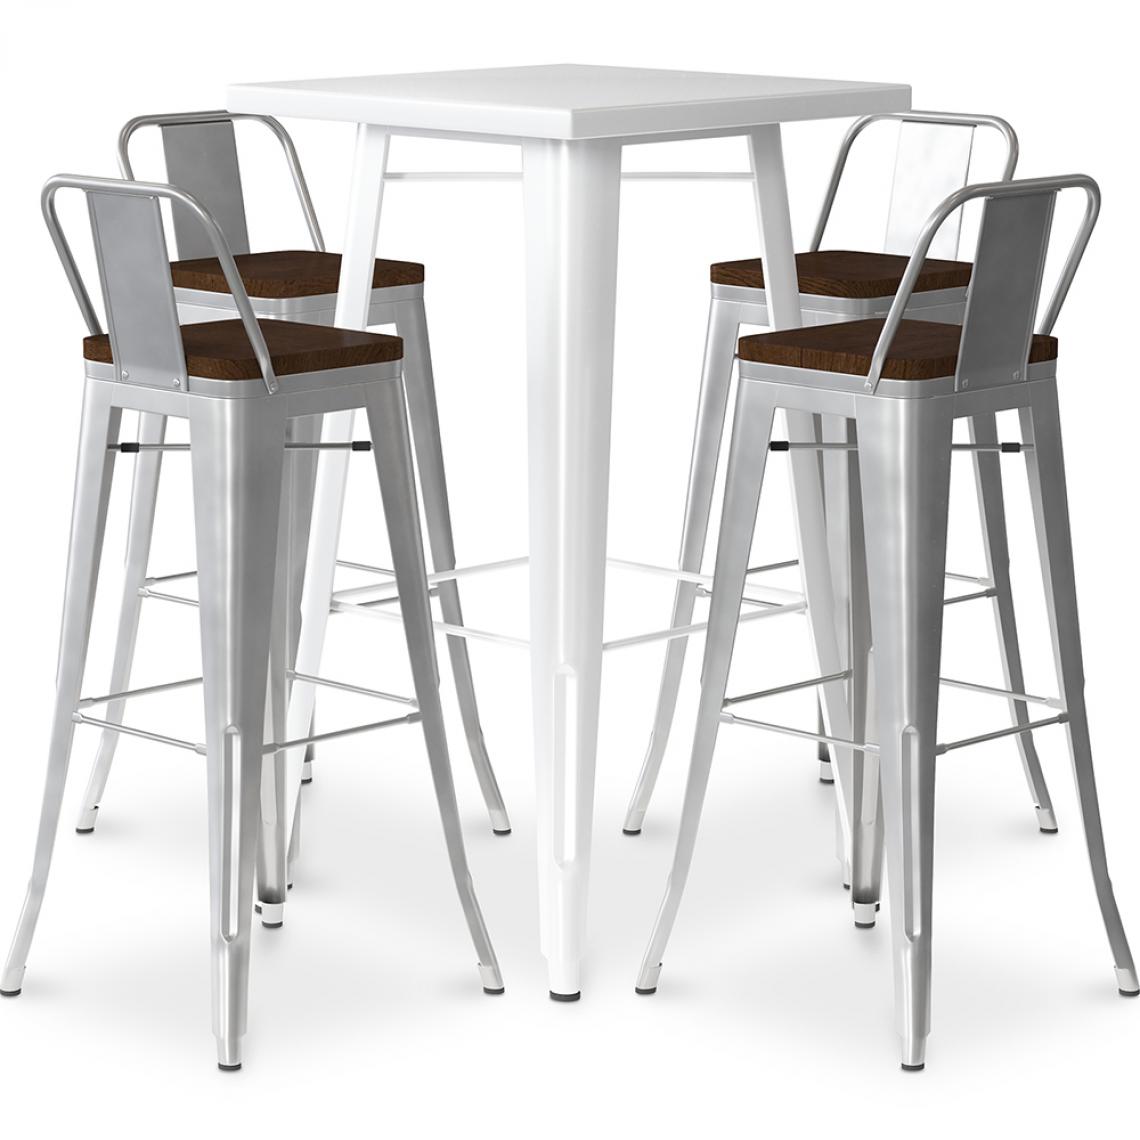 Iconik Interior - Table de bar blanche + 4 tabourets de bar en acier - Ensemble Bistrot Stylix Design industriel - Nouvelle édition Argenté - Tabourets